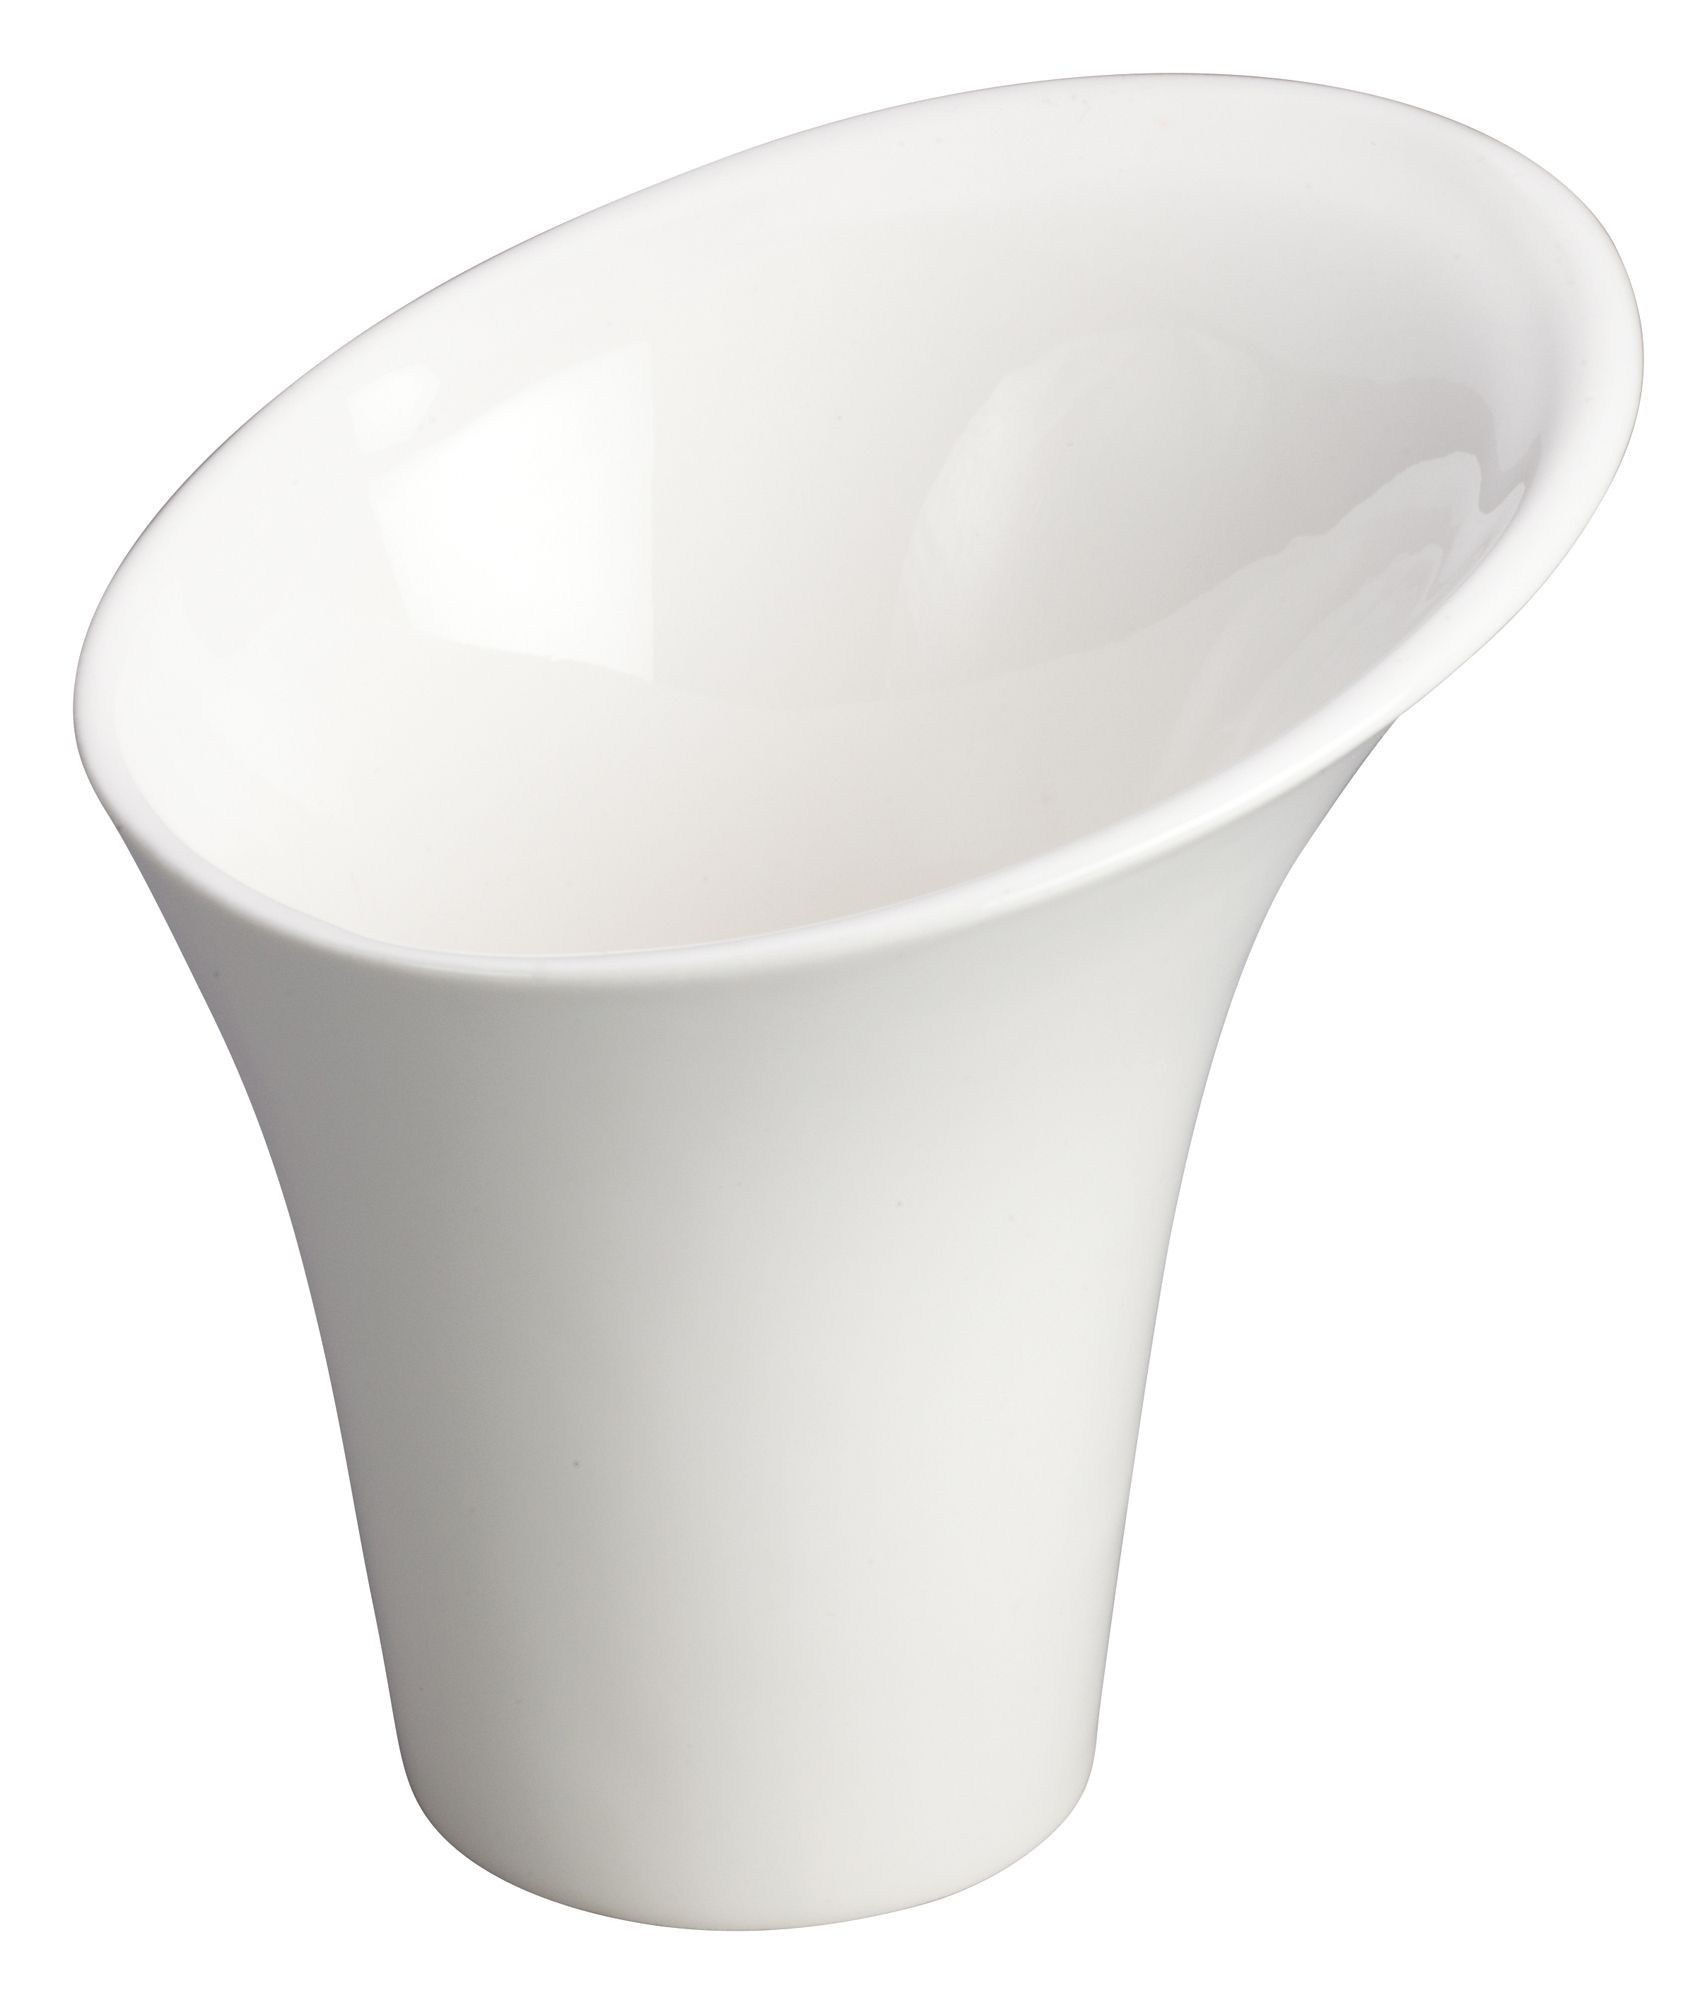 Winco WDP003-205 Rimini Creamy White Porcelain Snack Cup 5" Dia x 5" H